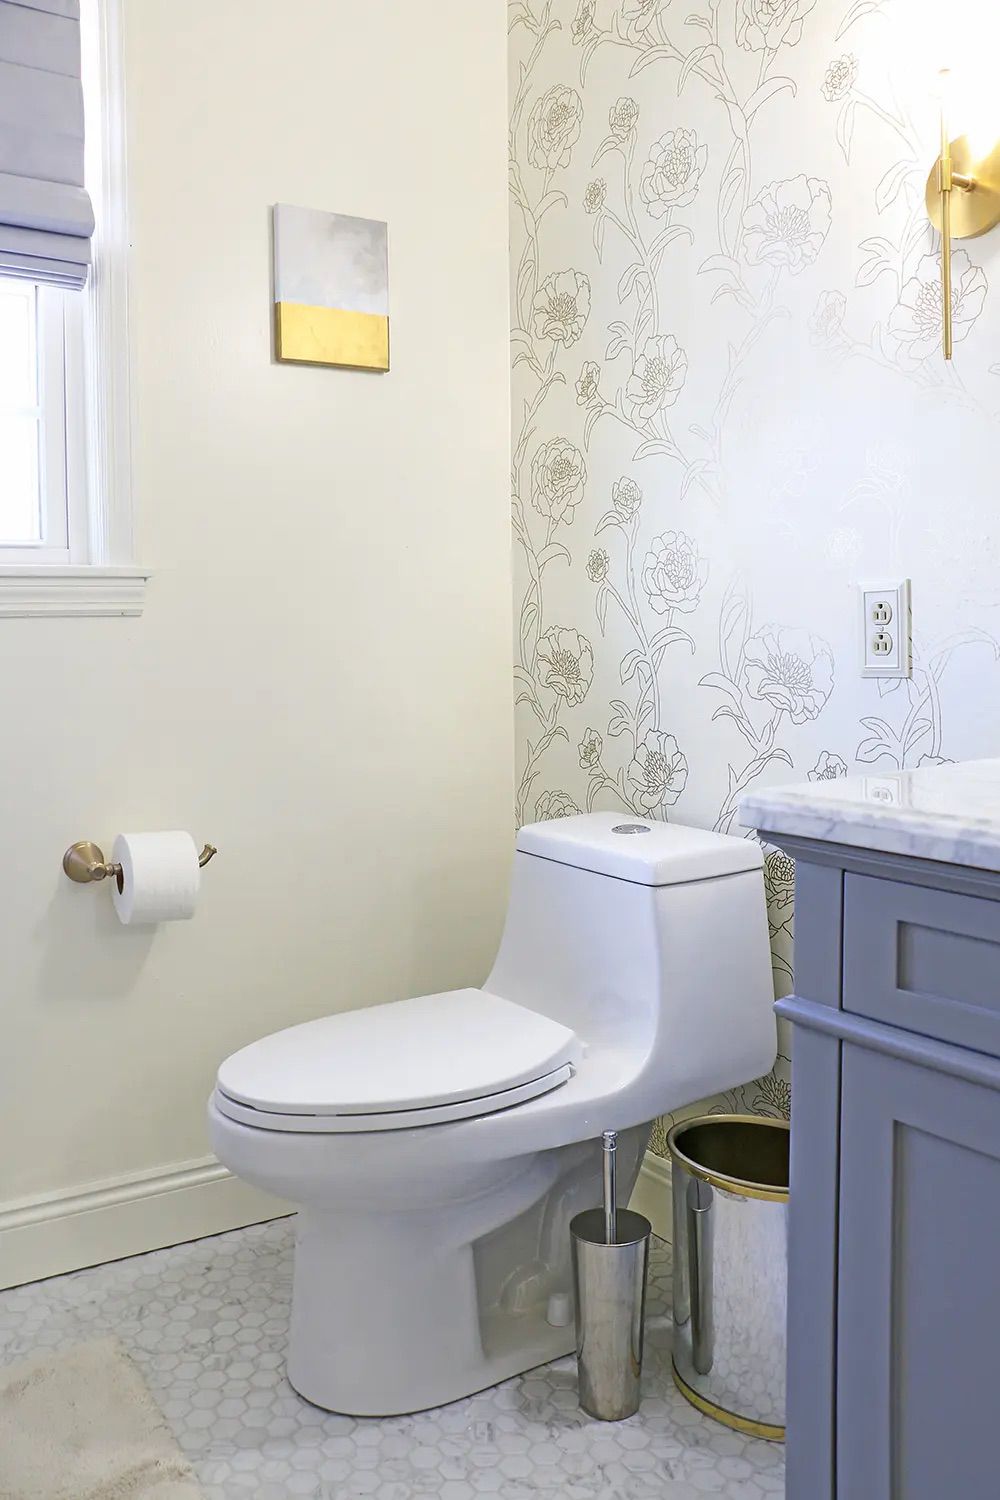 Salle de bain blanche et grise avec papier peint floral